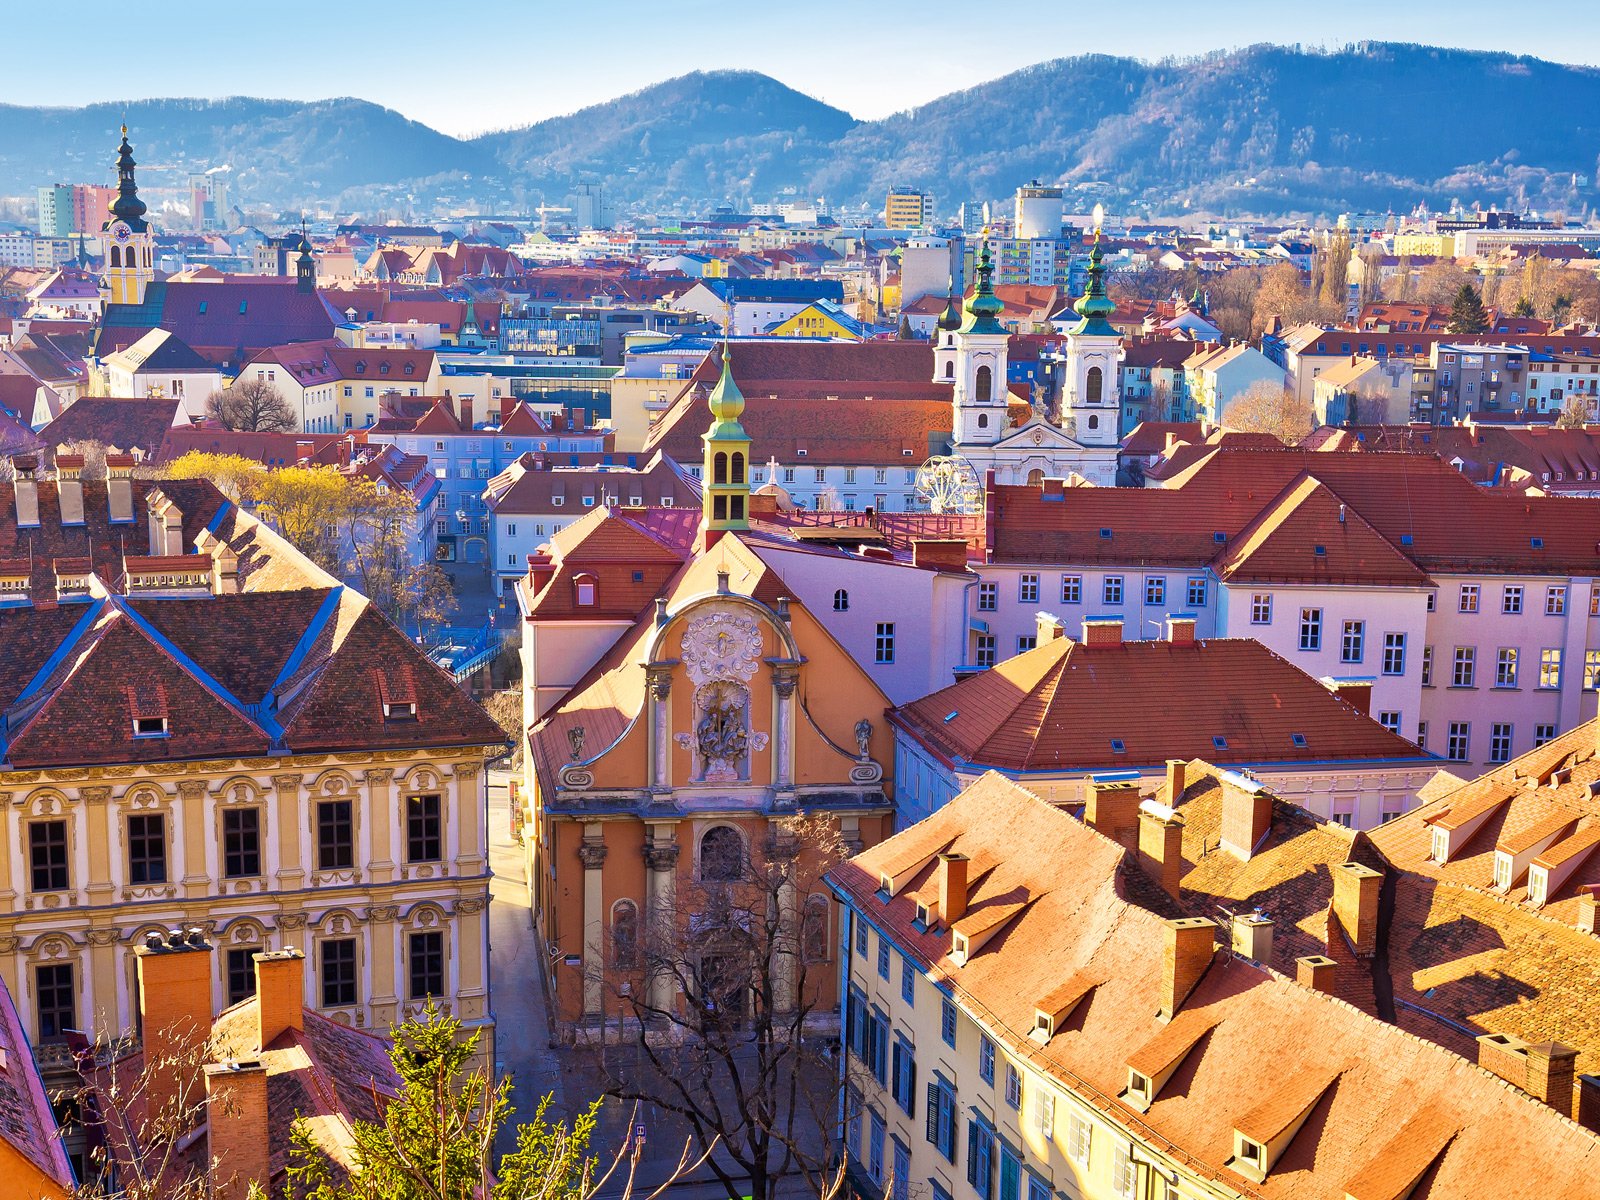 Feiern über den Dächern der Grazer Altstadt ist allseits beliebt.